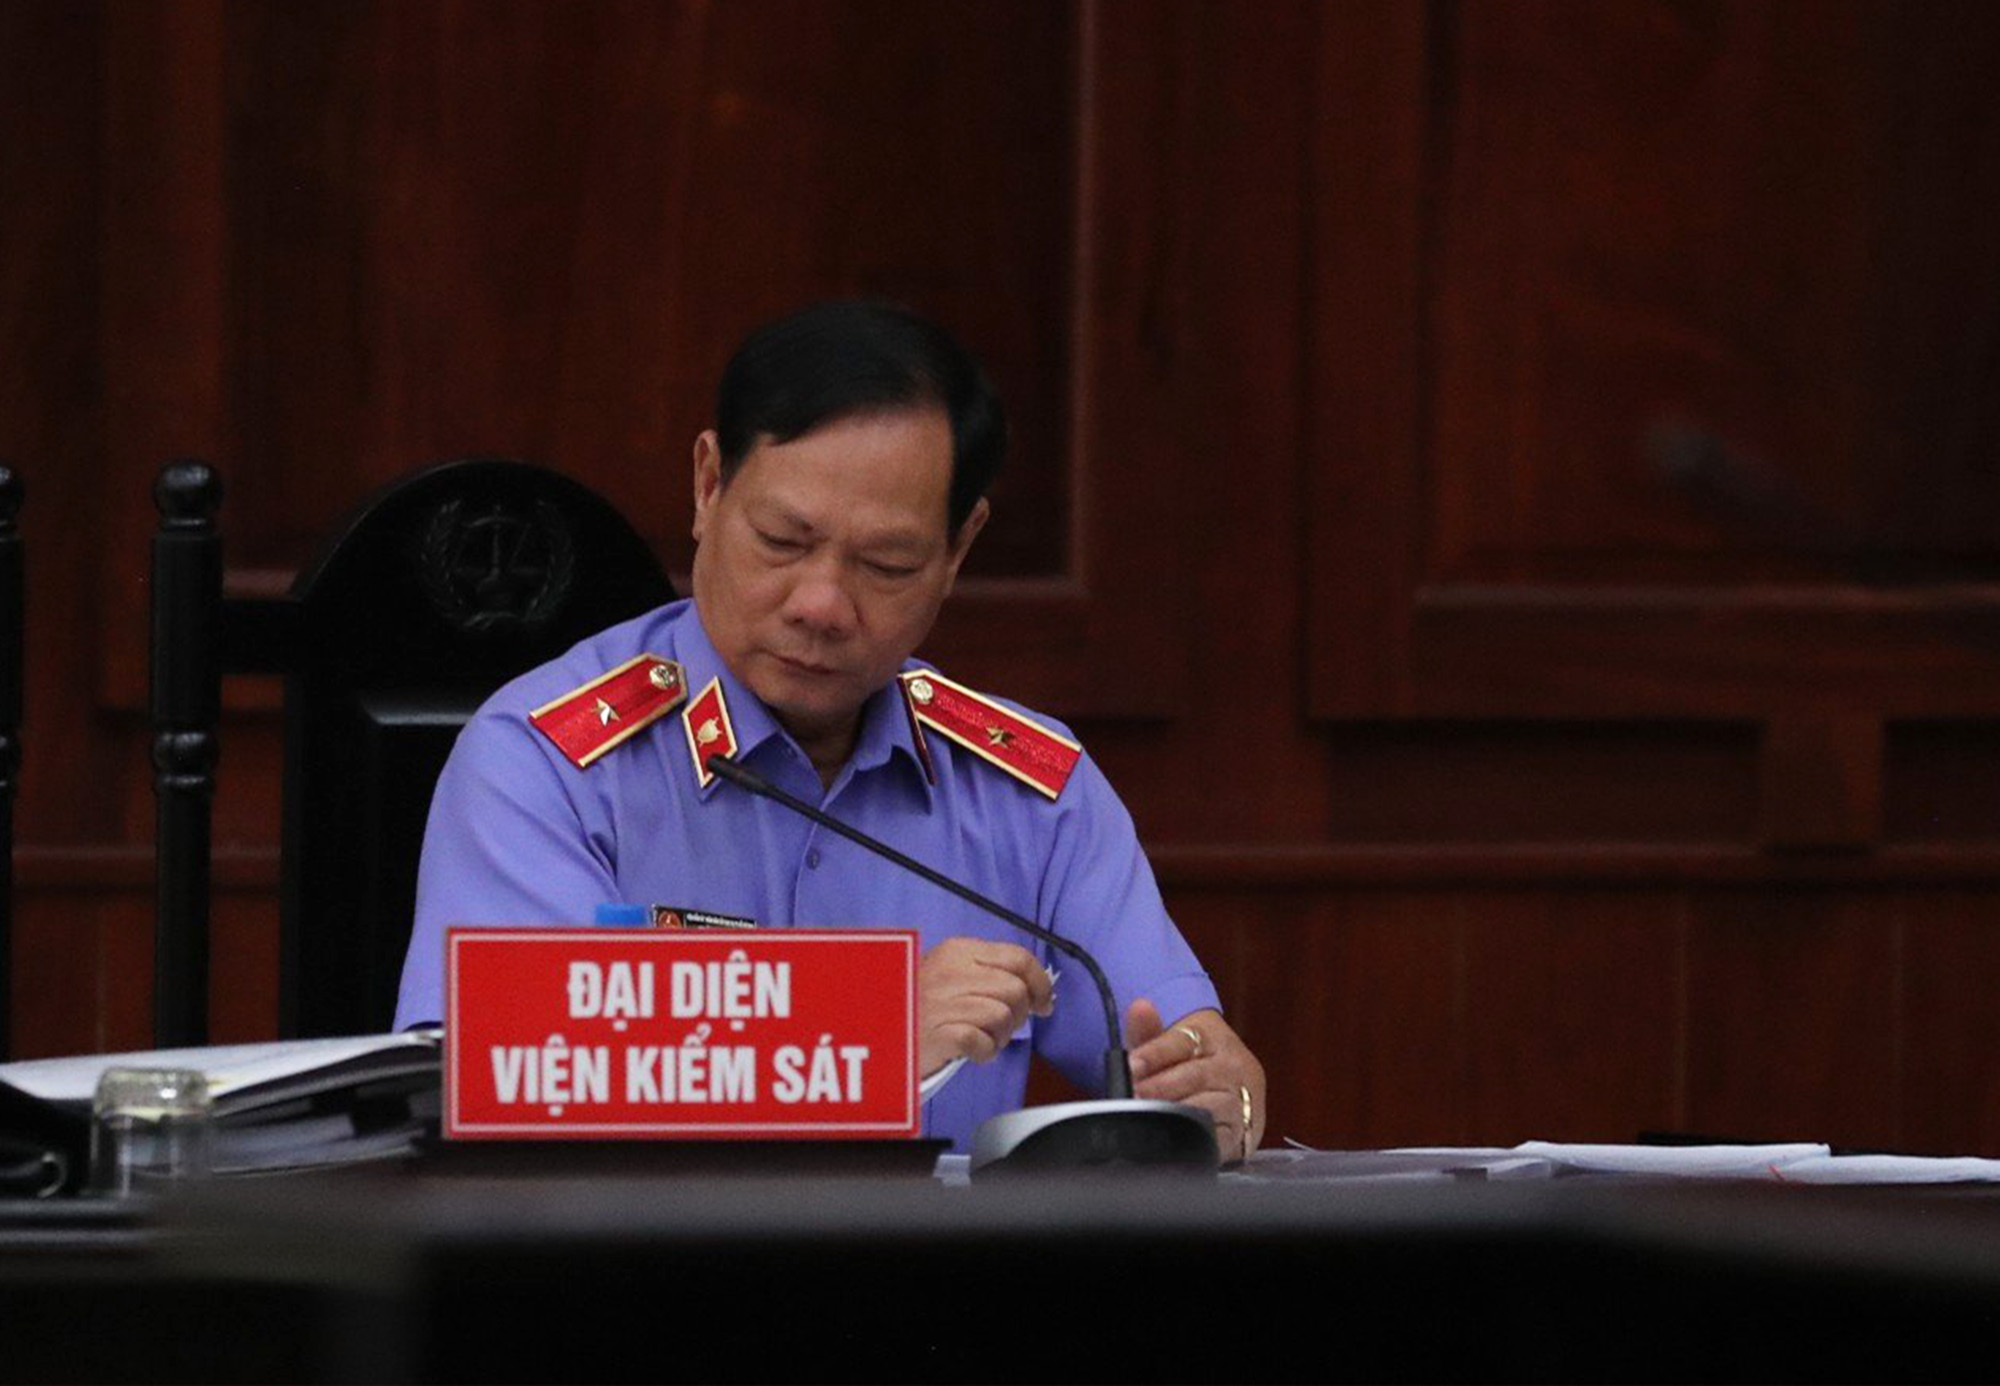 Vụ án liên quan Nguyễn Phương Hằng: Viện kiểm sát đề nghị bác toàn bộ kháng cáo- Ảnh 1.